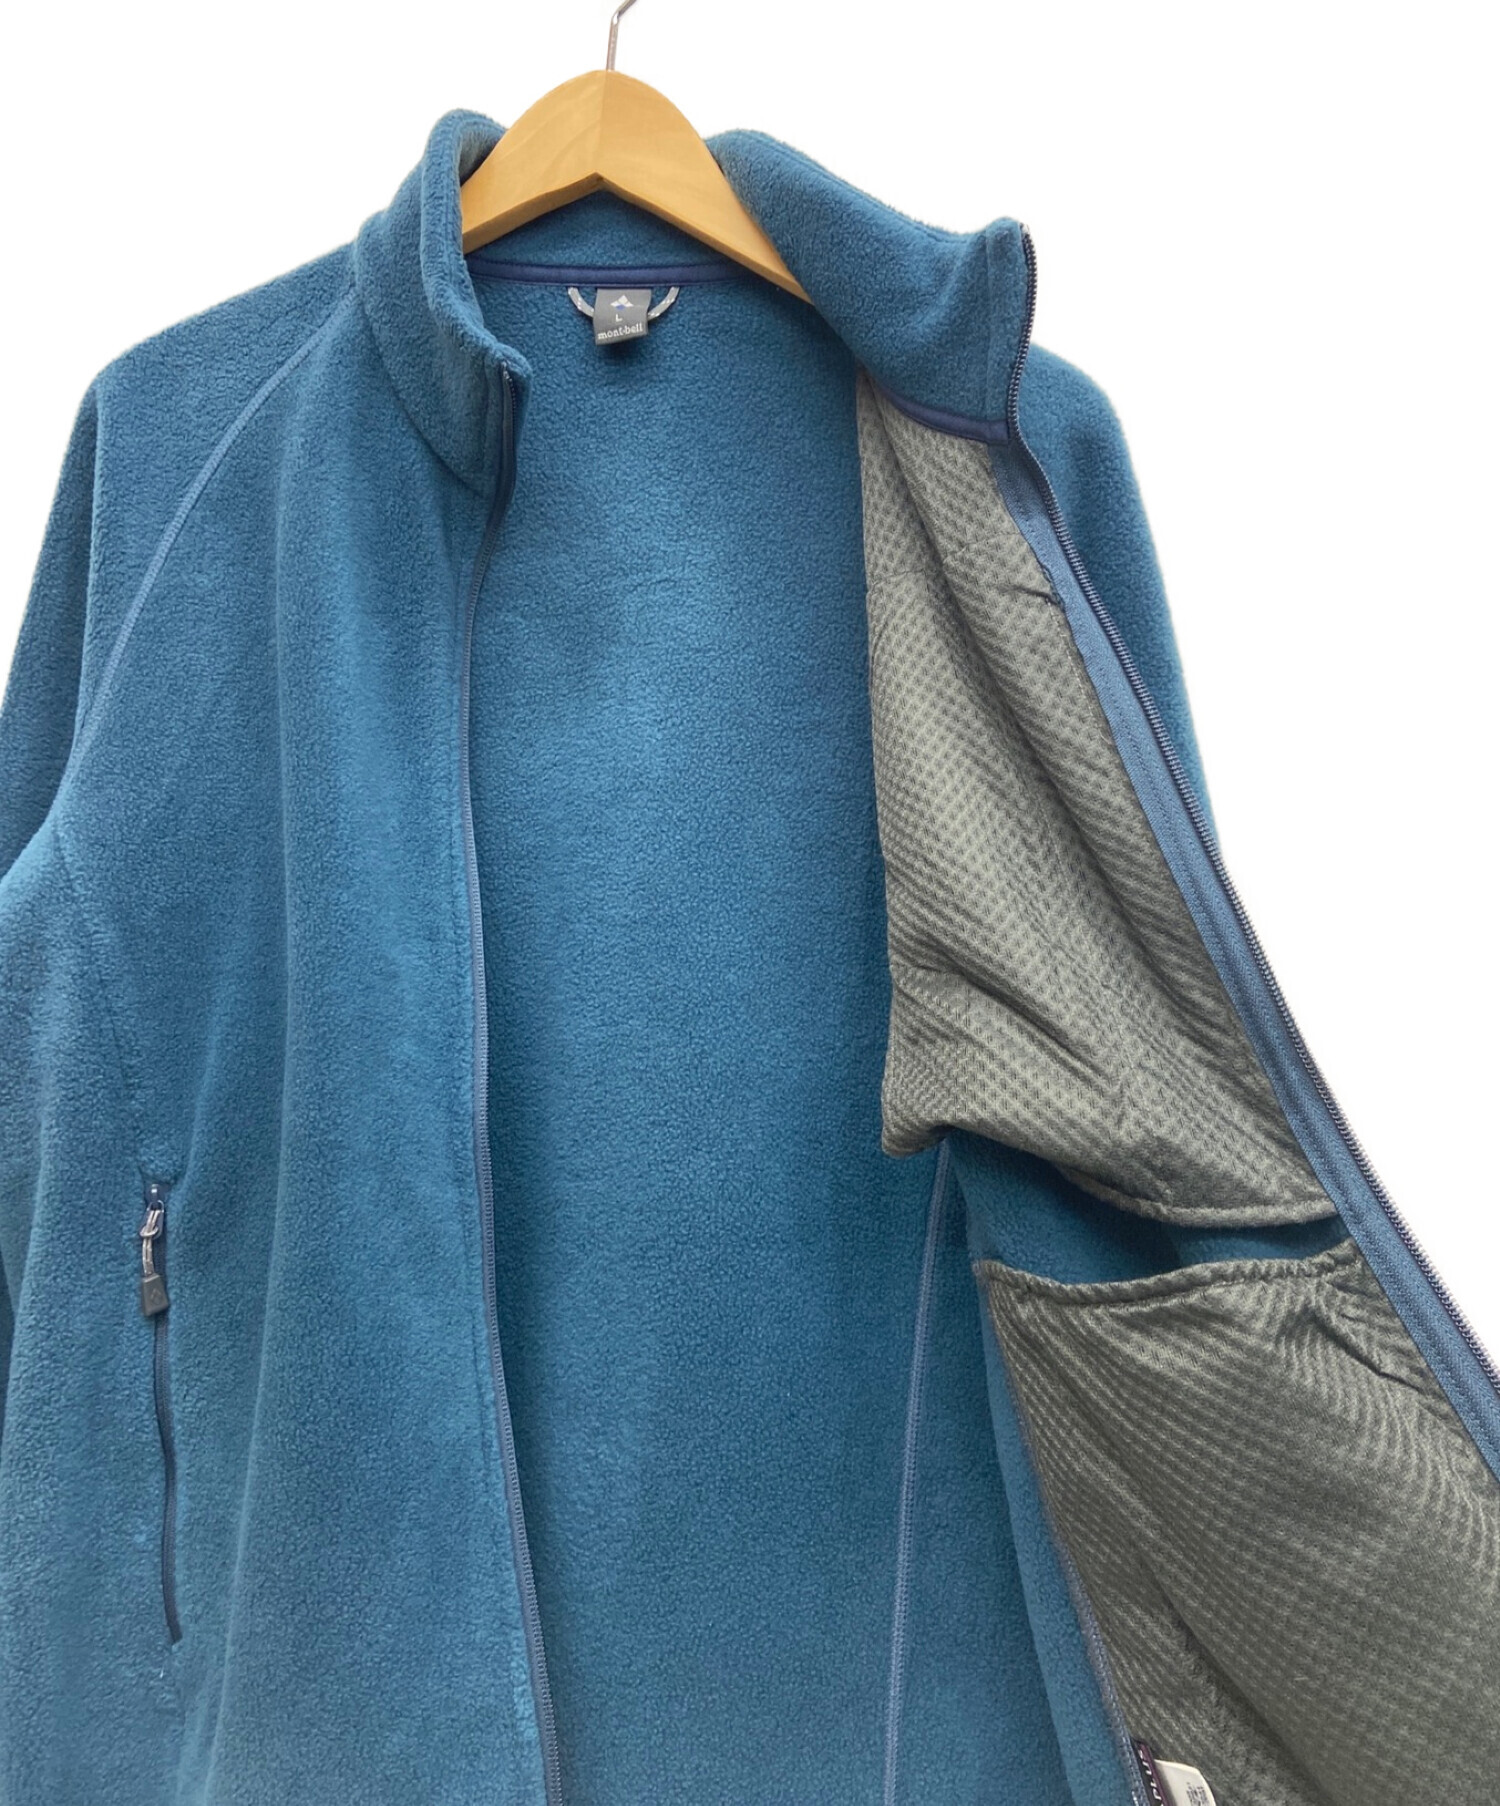 mont-bell (モンベル) フリースジャケット ブルー サイズ:L